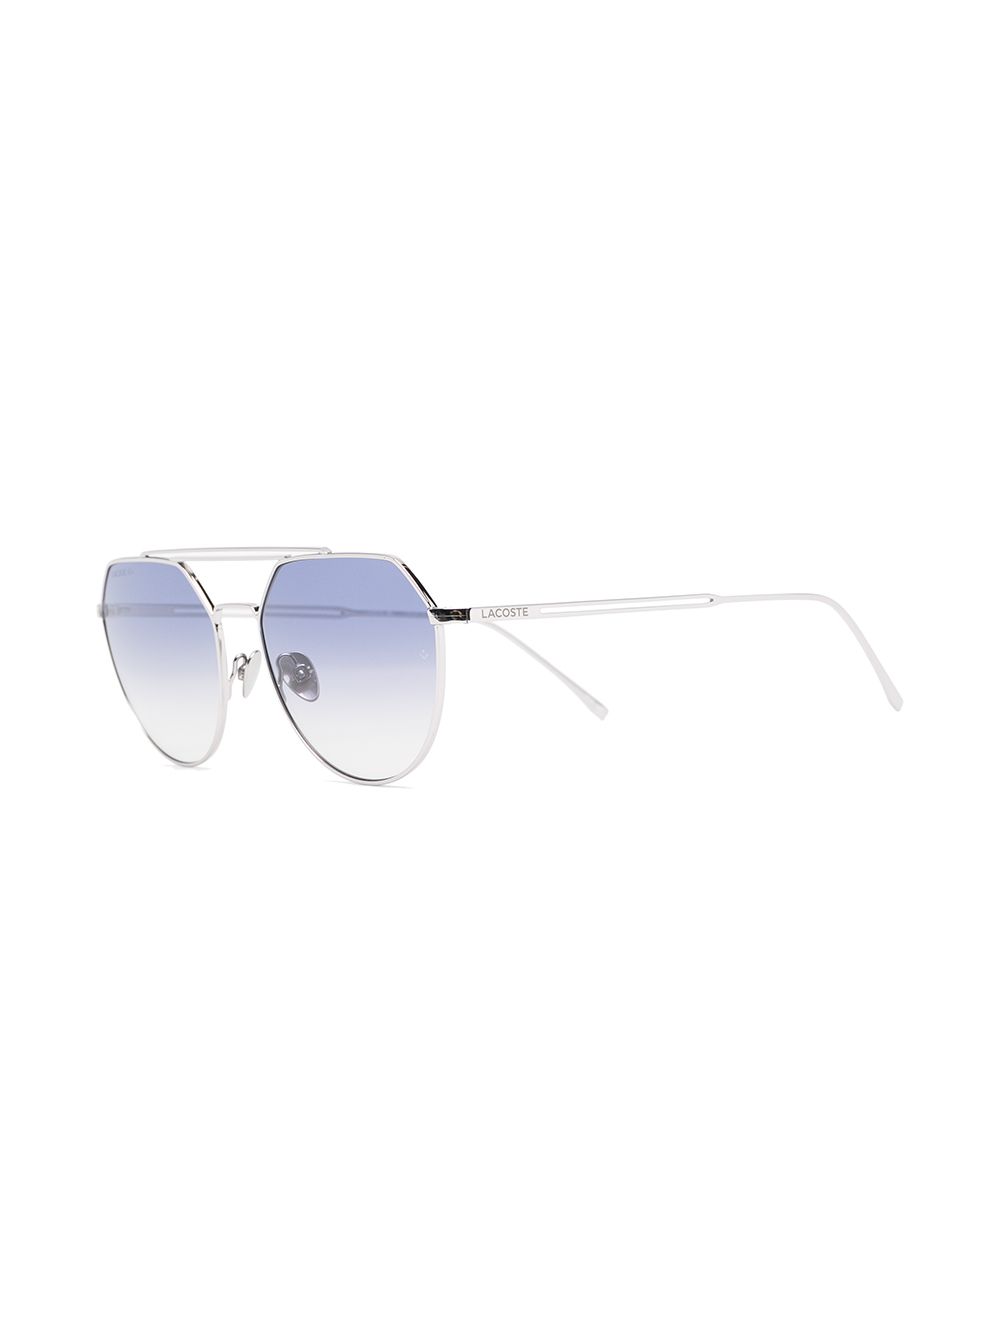 фото Lacoste солнцезащитные очки с градиентными линзами